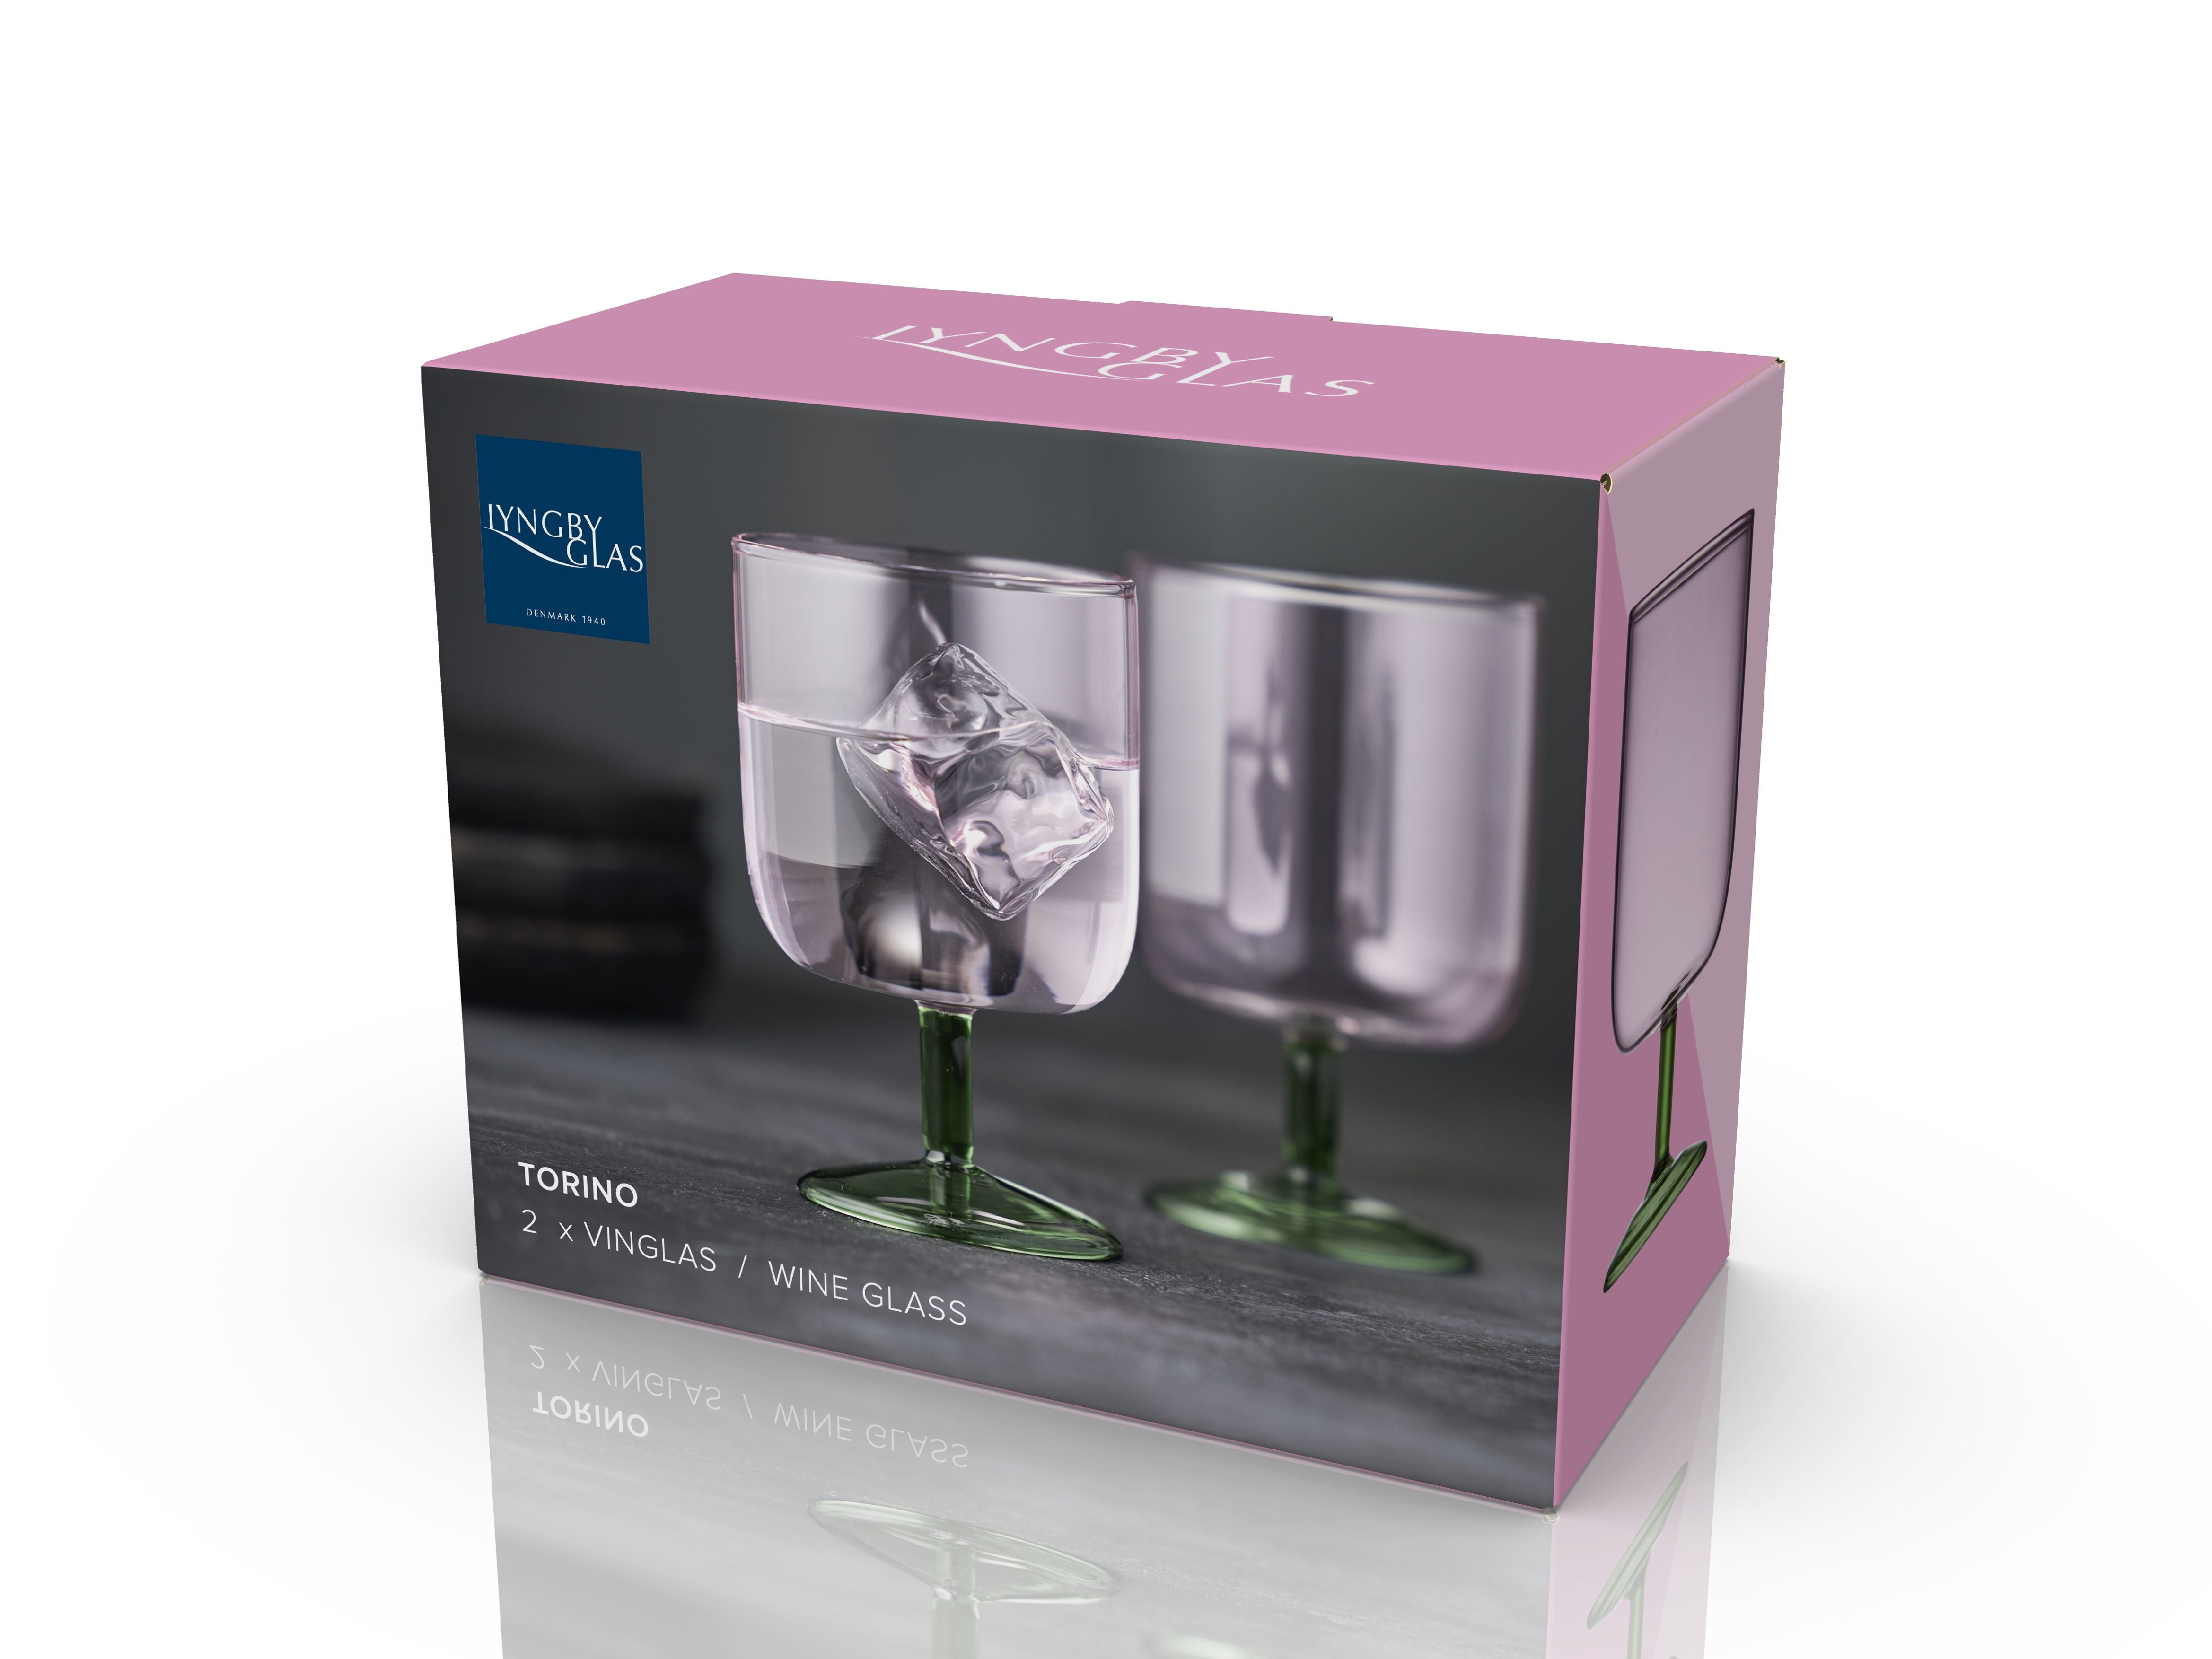 Lyngby Glas Torino Weinglas 30 Cl 2 PCs, rosa/grün